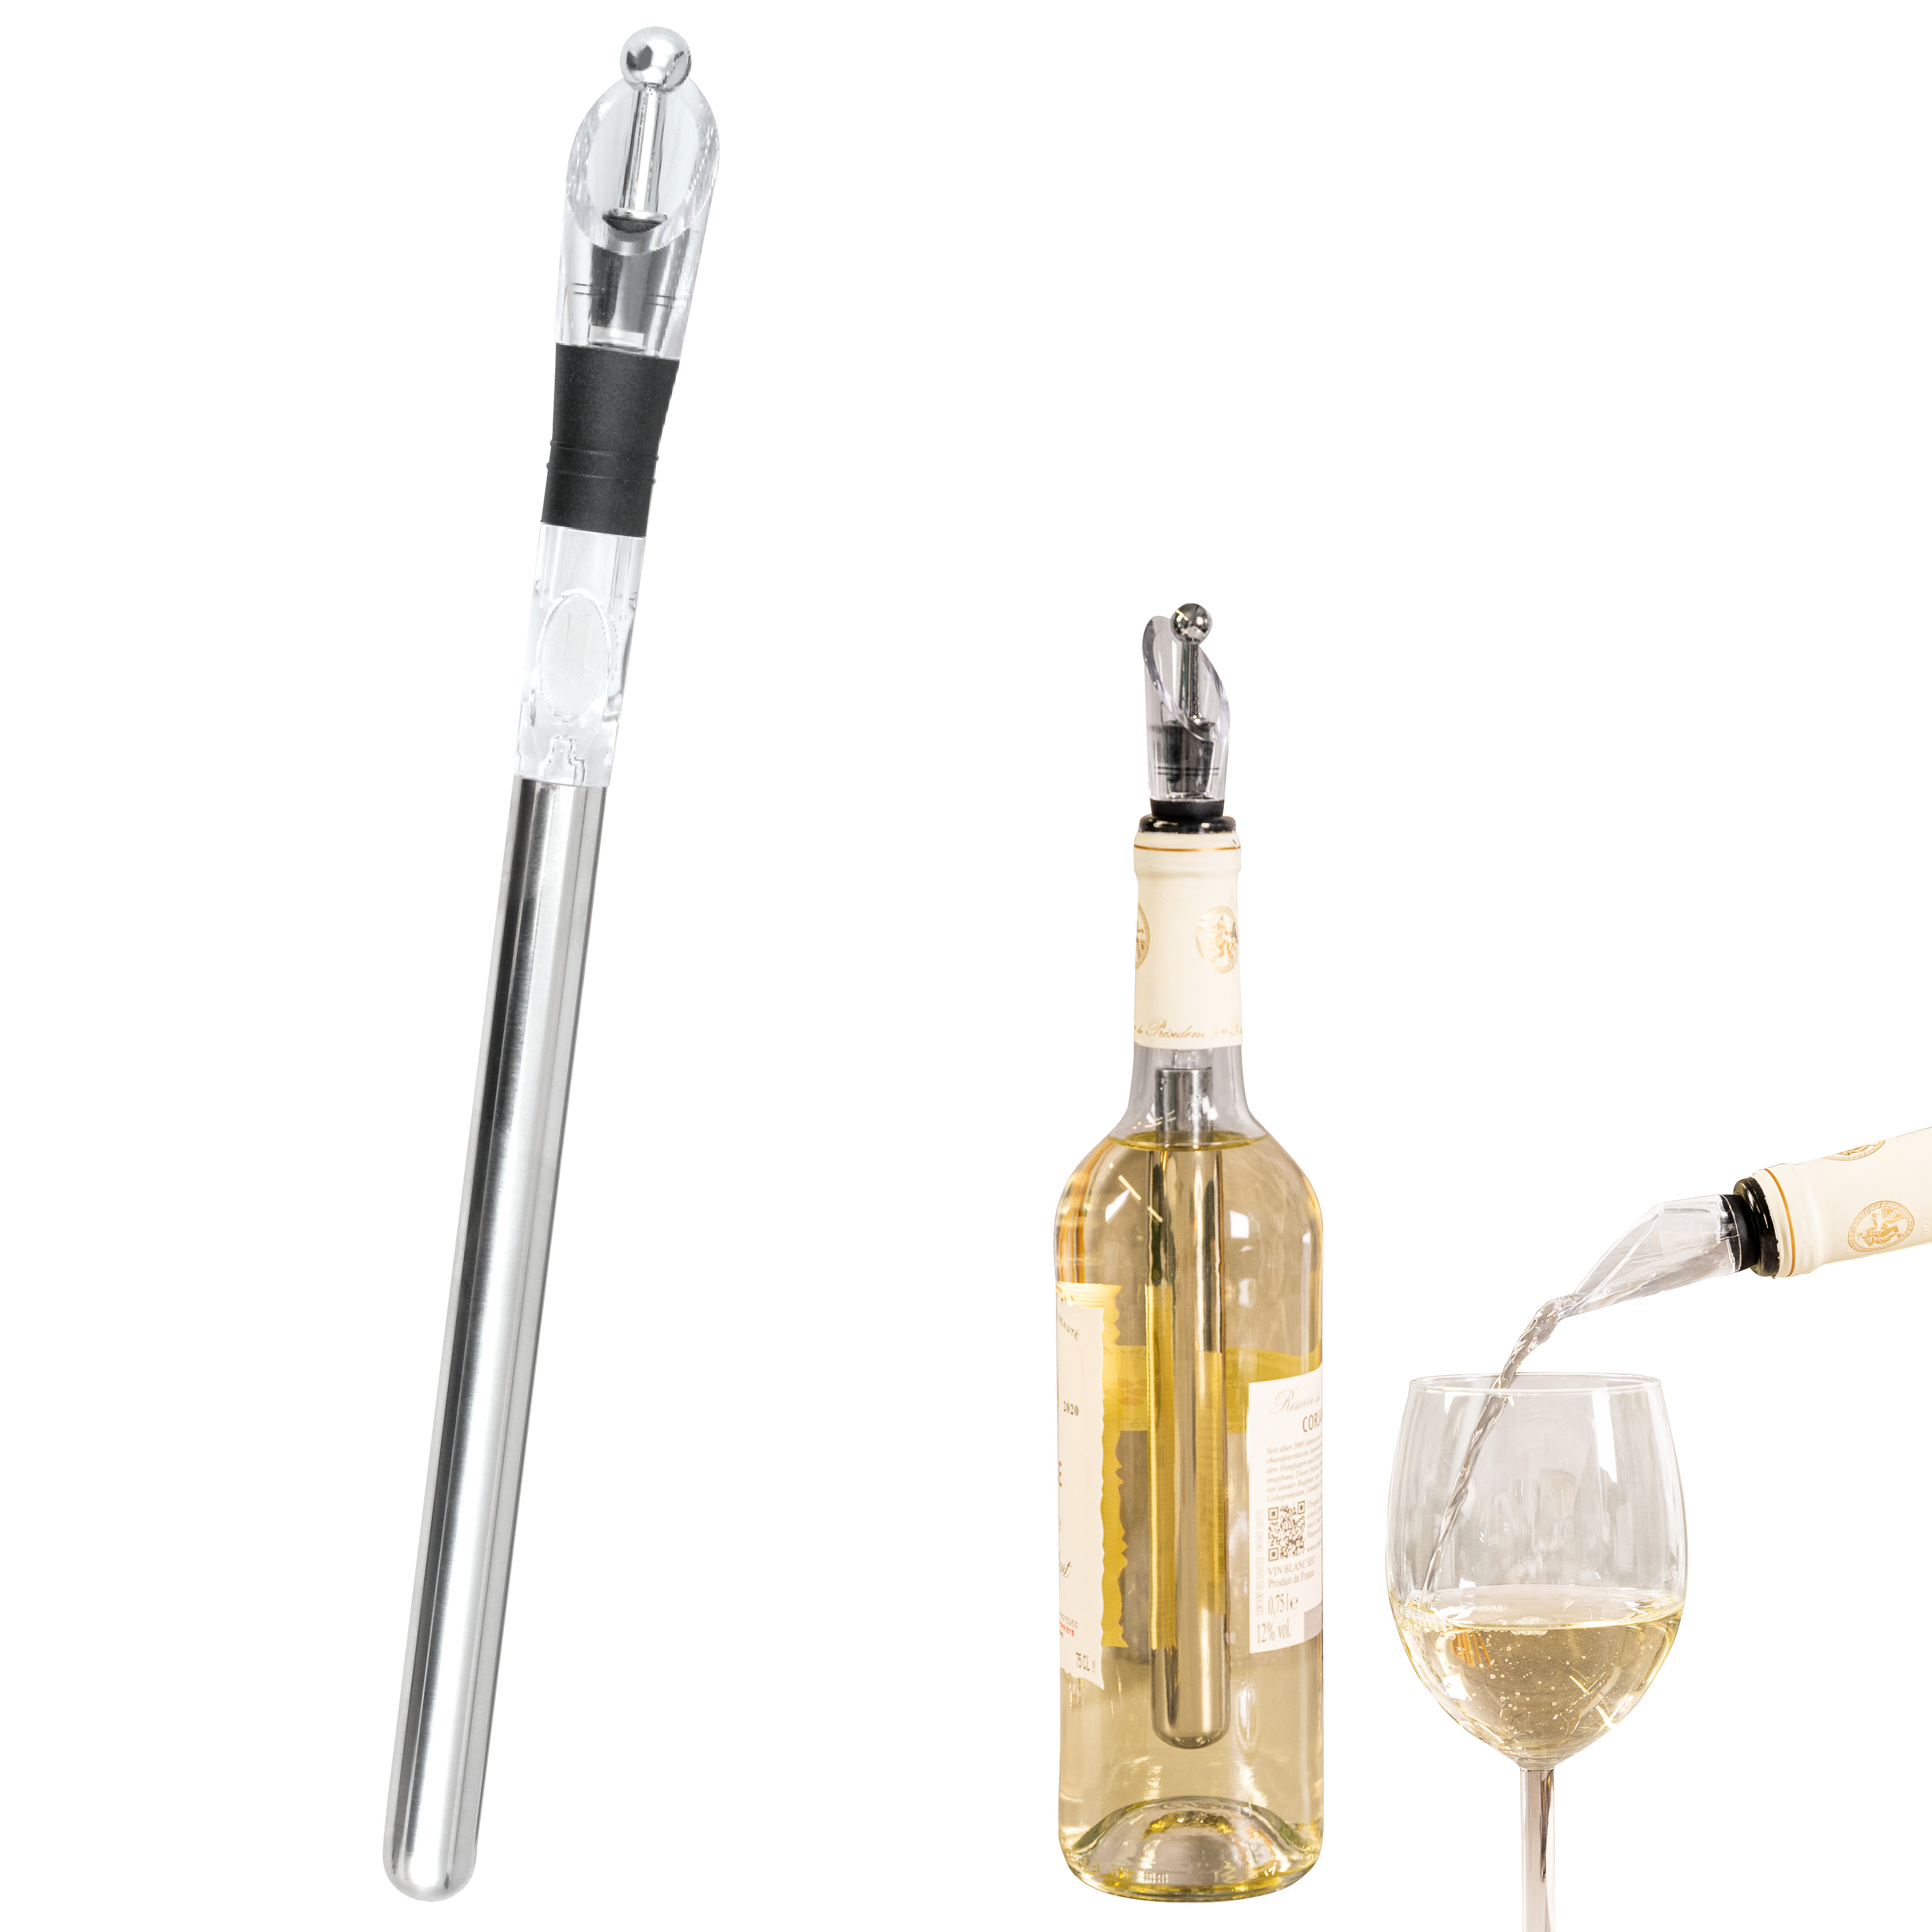 Wein-Ausgießer mit Edelstahl-Kühlstaben und Weinverschluss, Weinkühler, Weinausgießer